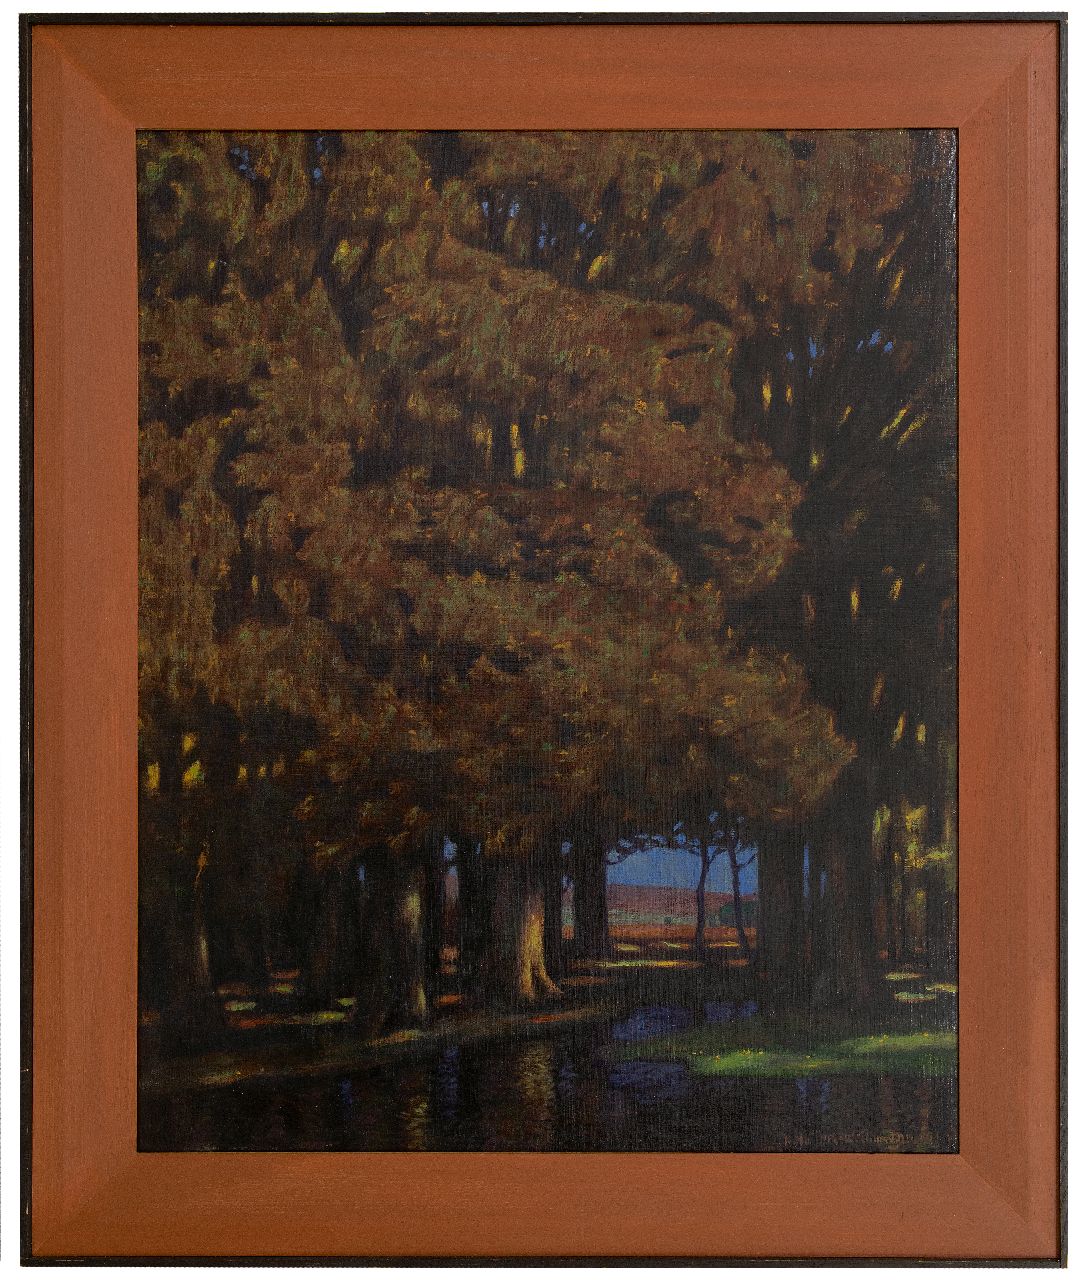 Holleck-Weithmann K.  | Karl Holleck-Weithmann | Schilderijen te koop aangeboden | 't Donkere woud, olieverf op doek 94,7 x 77,0 cm, gesigneerd rechtsonder en gedateerd 1911